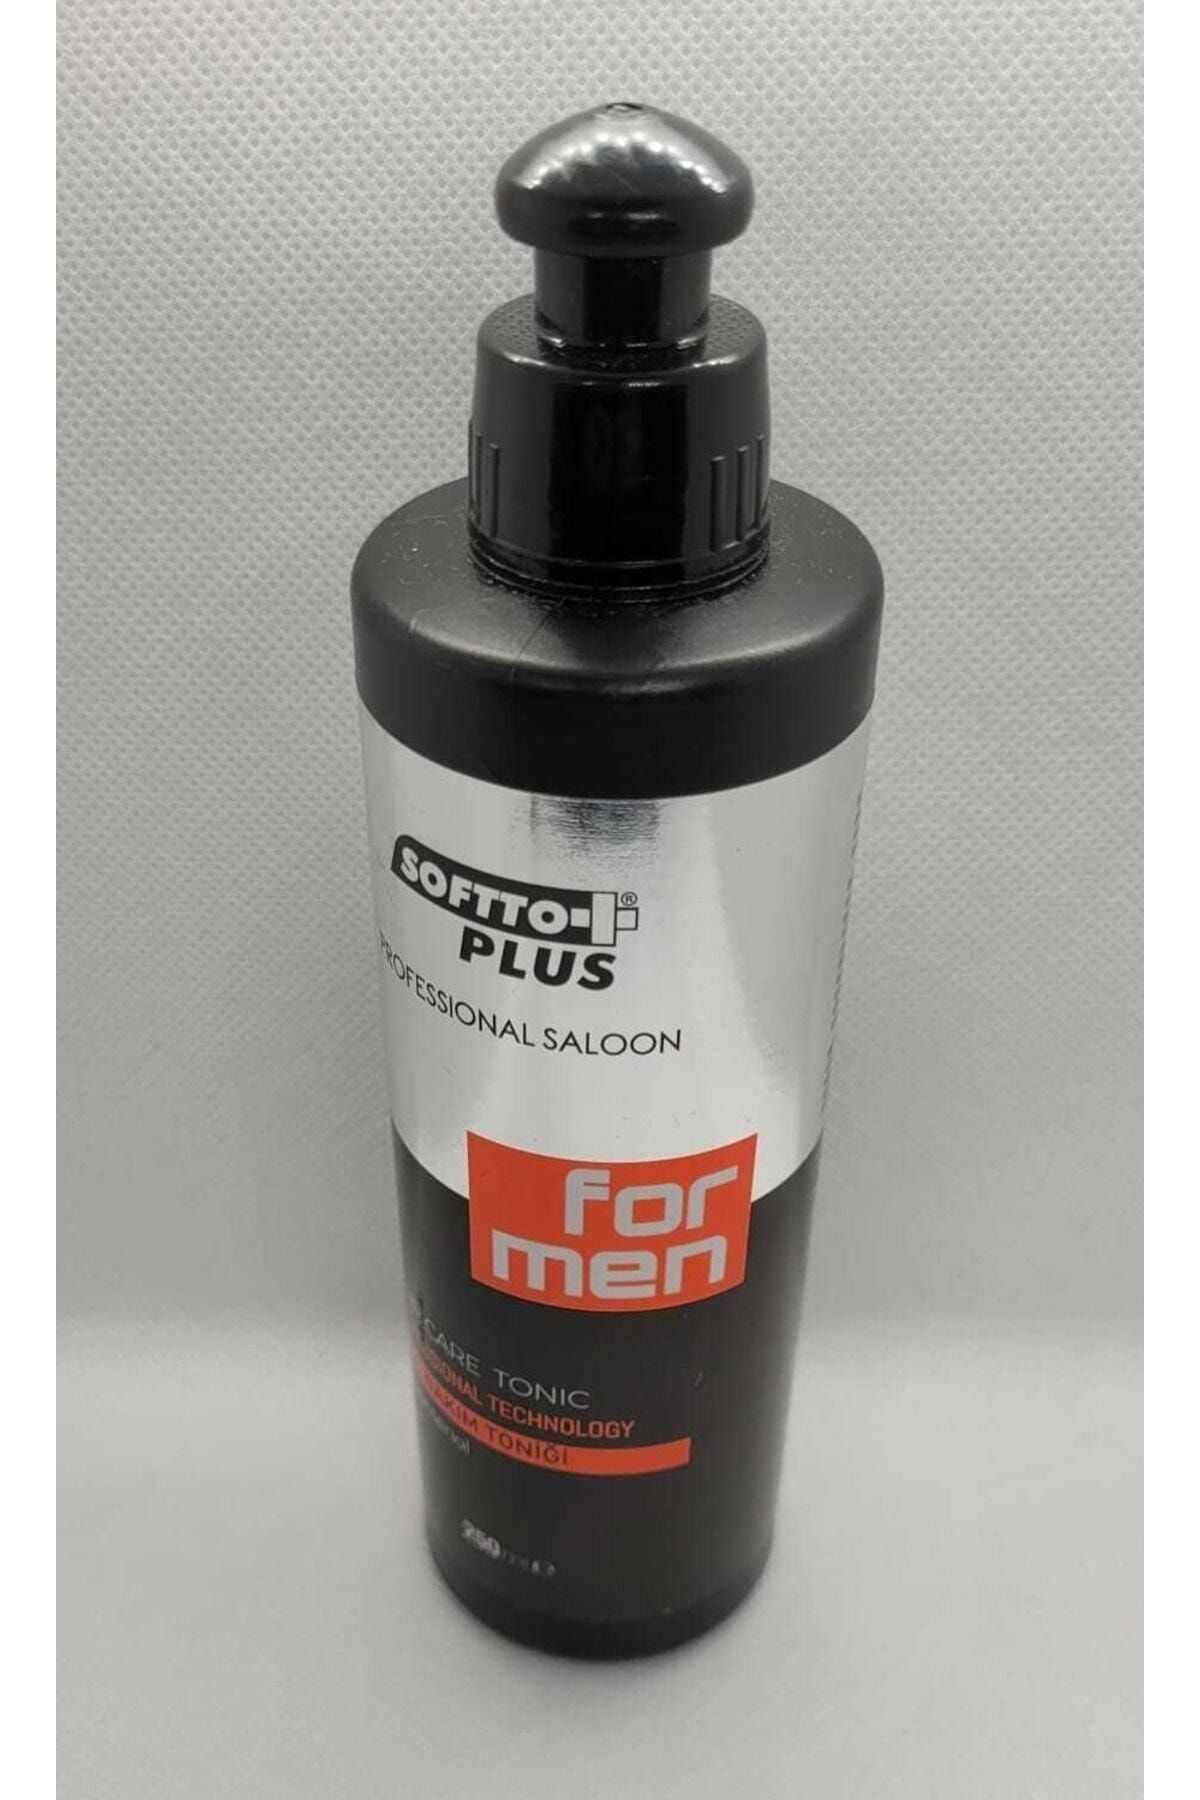 Softto Plus Mentollü&ferahlatıcı Saç Bakım Toniği 250-ml …softoo-tonik-2210